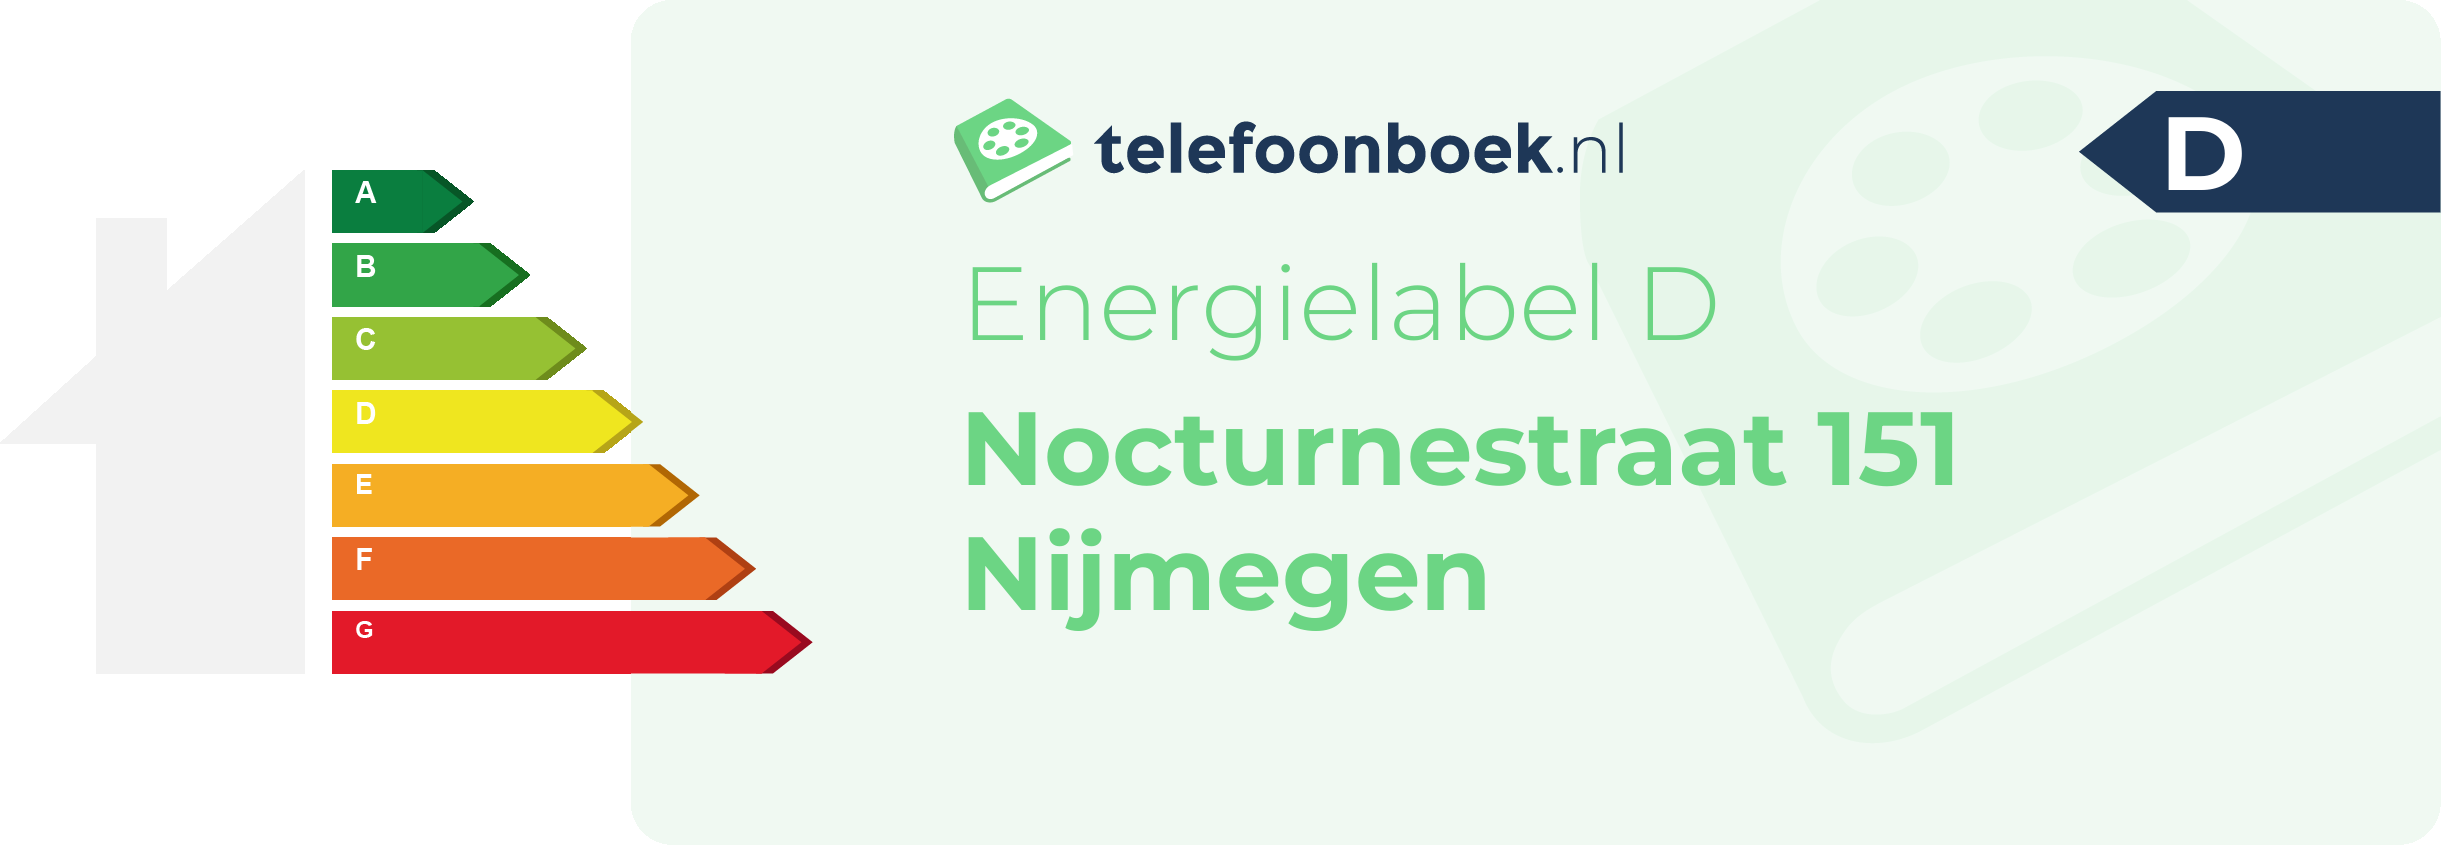 Energielabel Nocturnestraat 151 Nijmegen